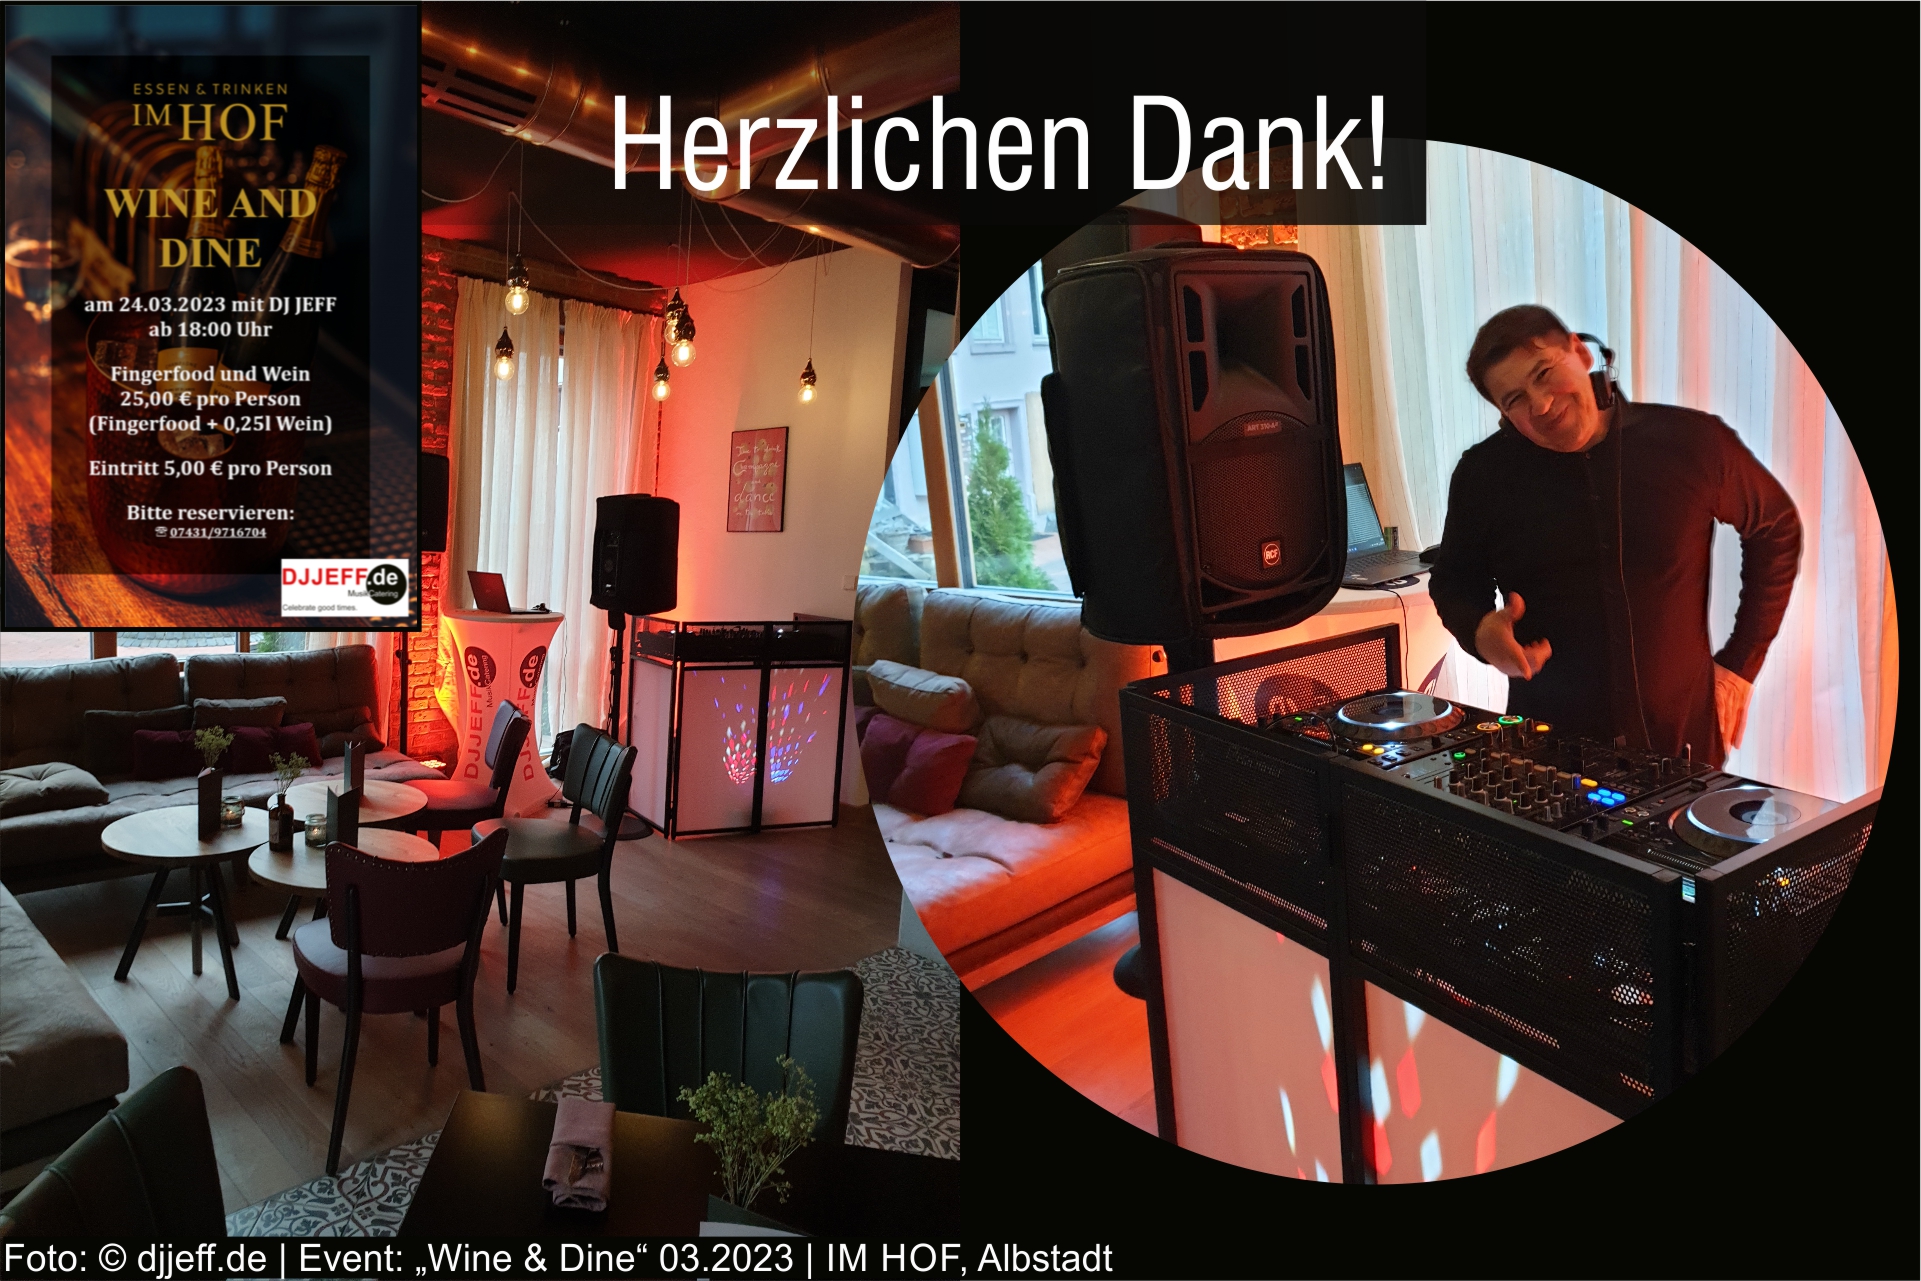 Danke_Wine&Dine_Im Hof Albstadt_03.2023